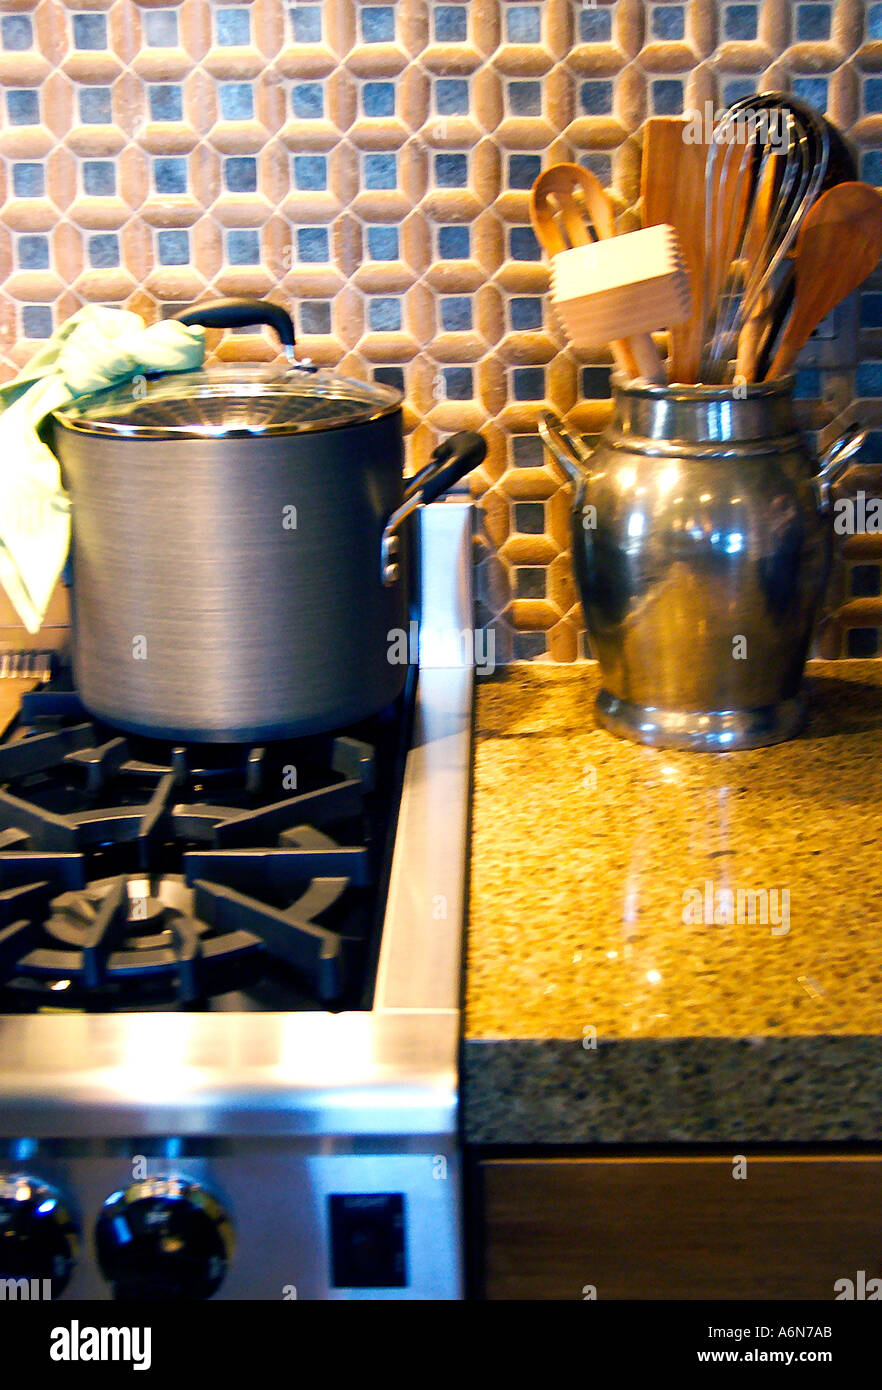 kitchen stove Stock Photo